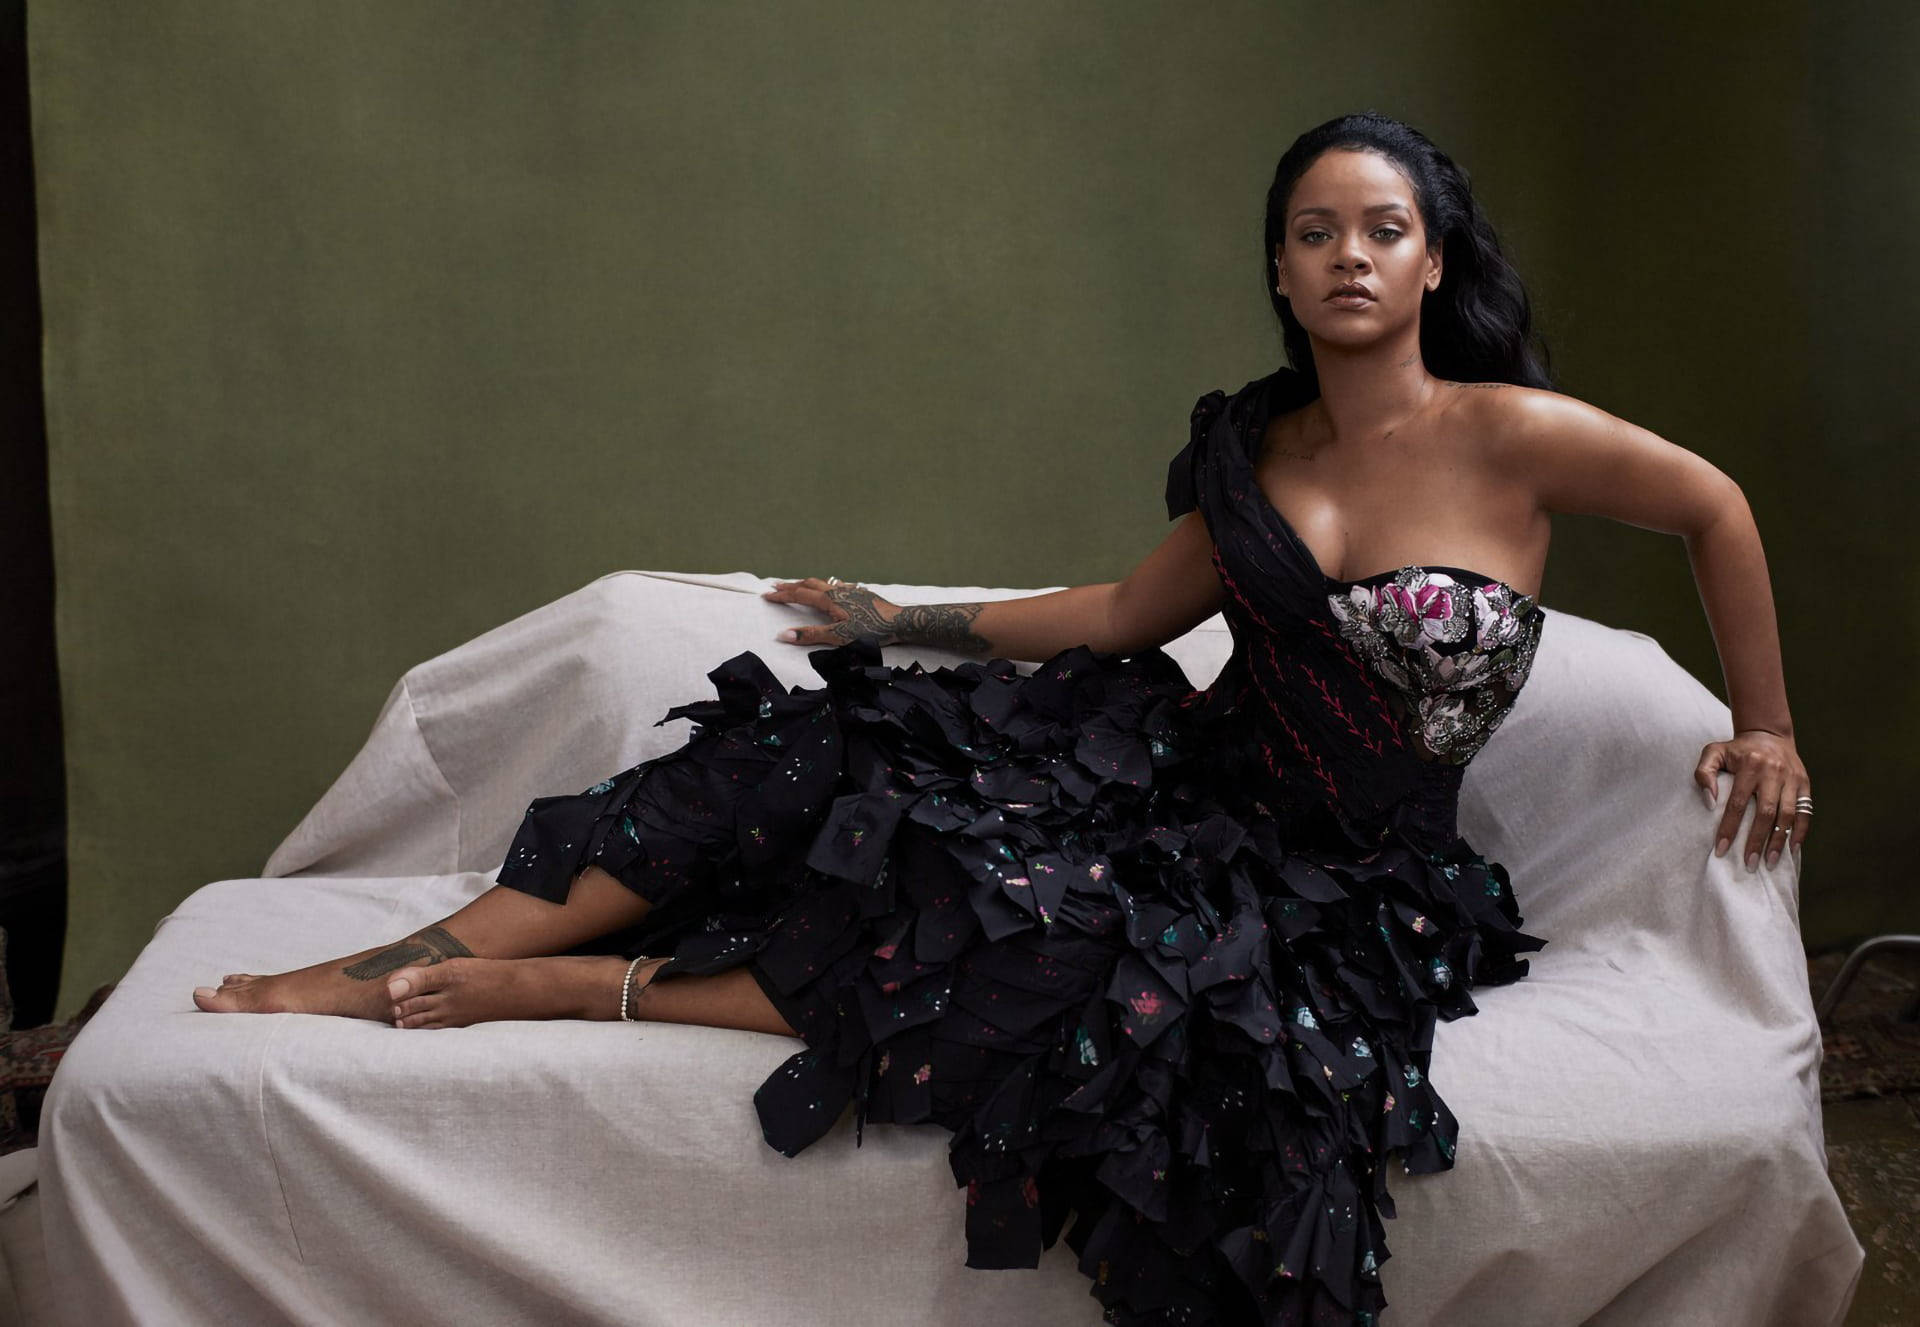 Rihannahd-klänning På Soffan. Wallpaper